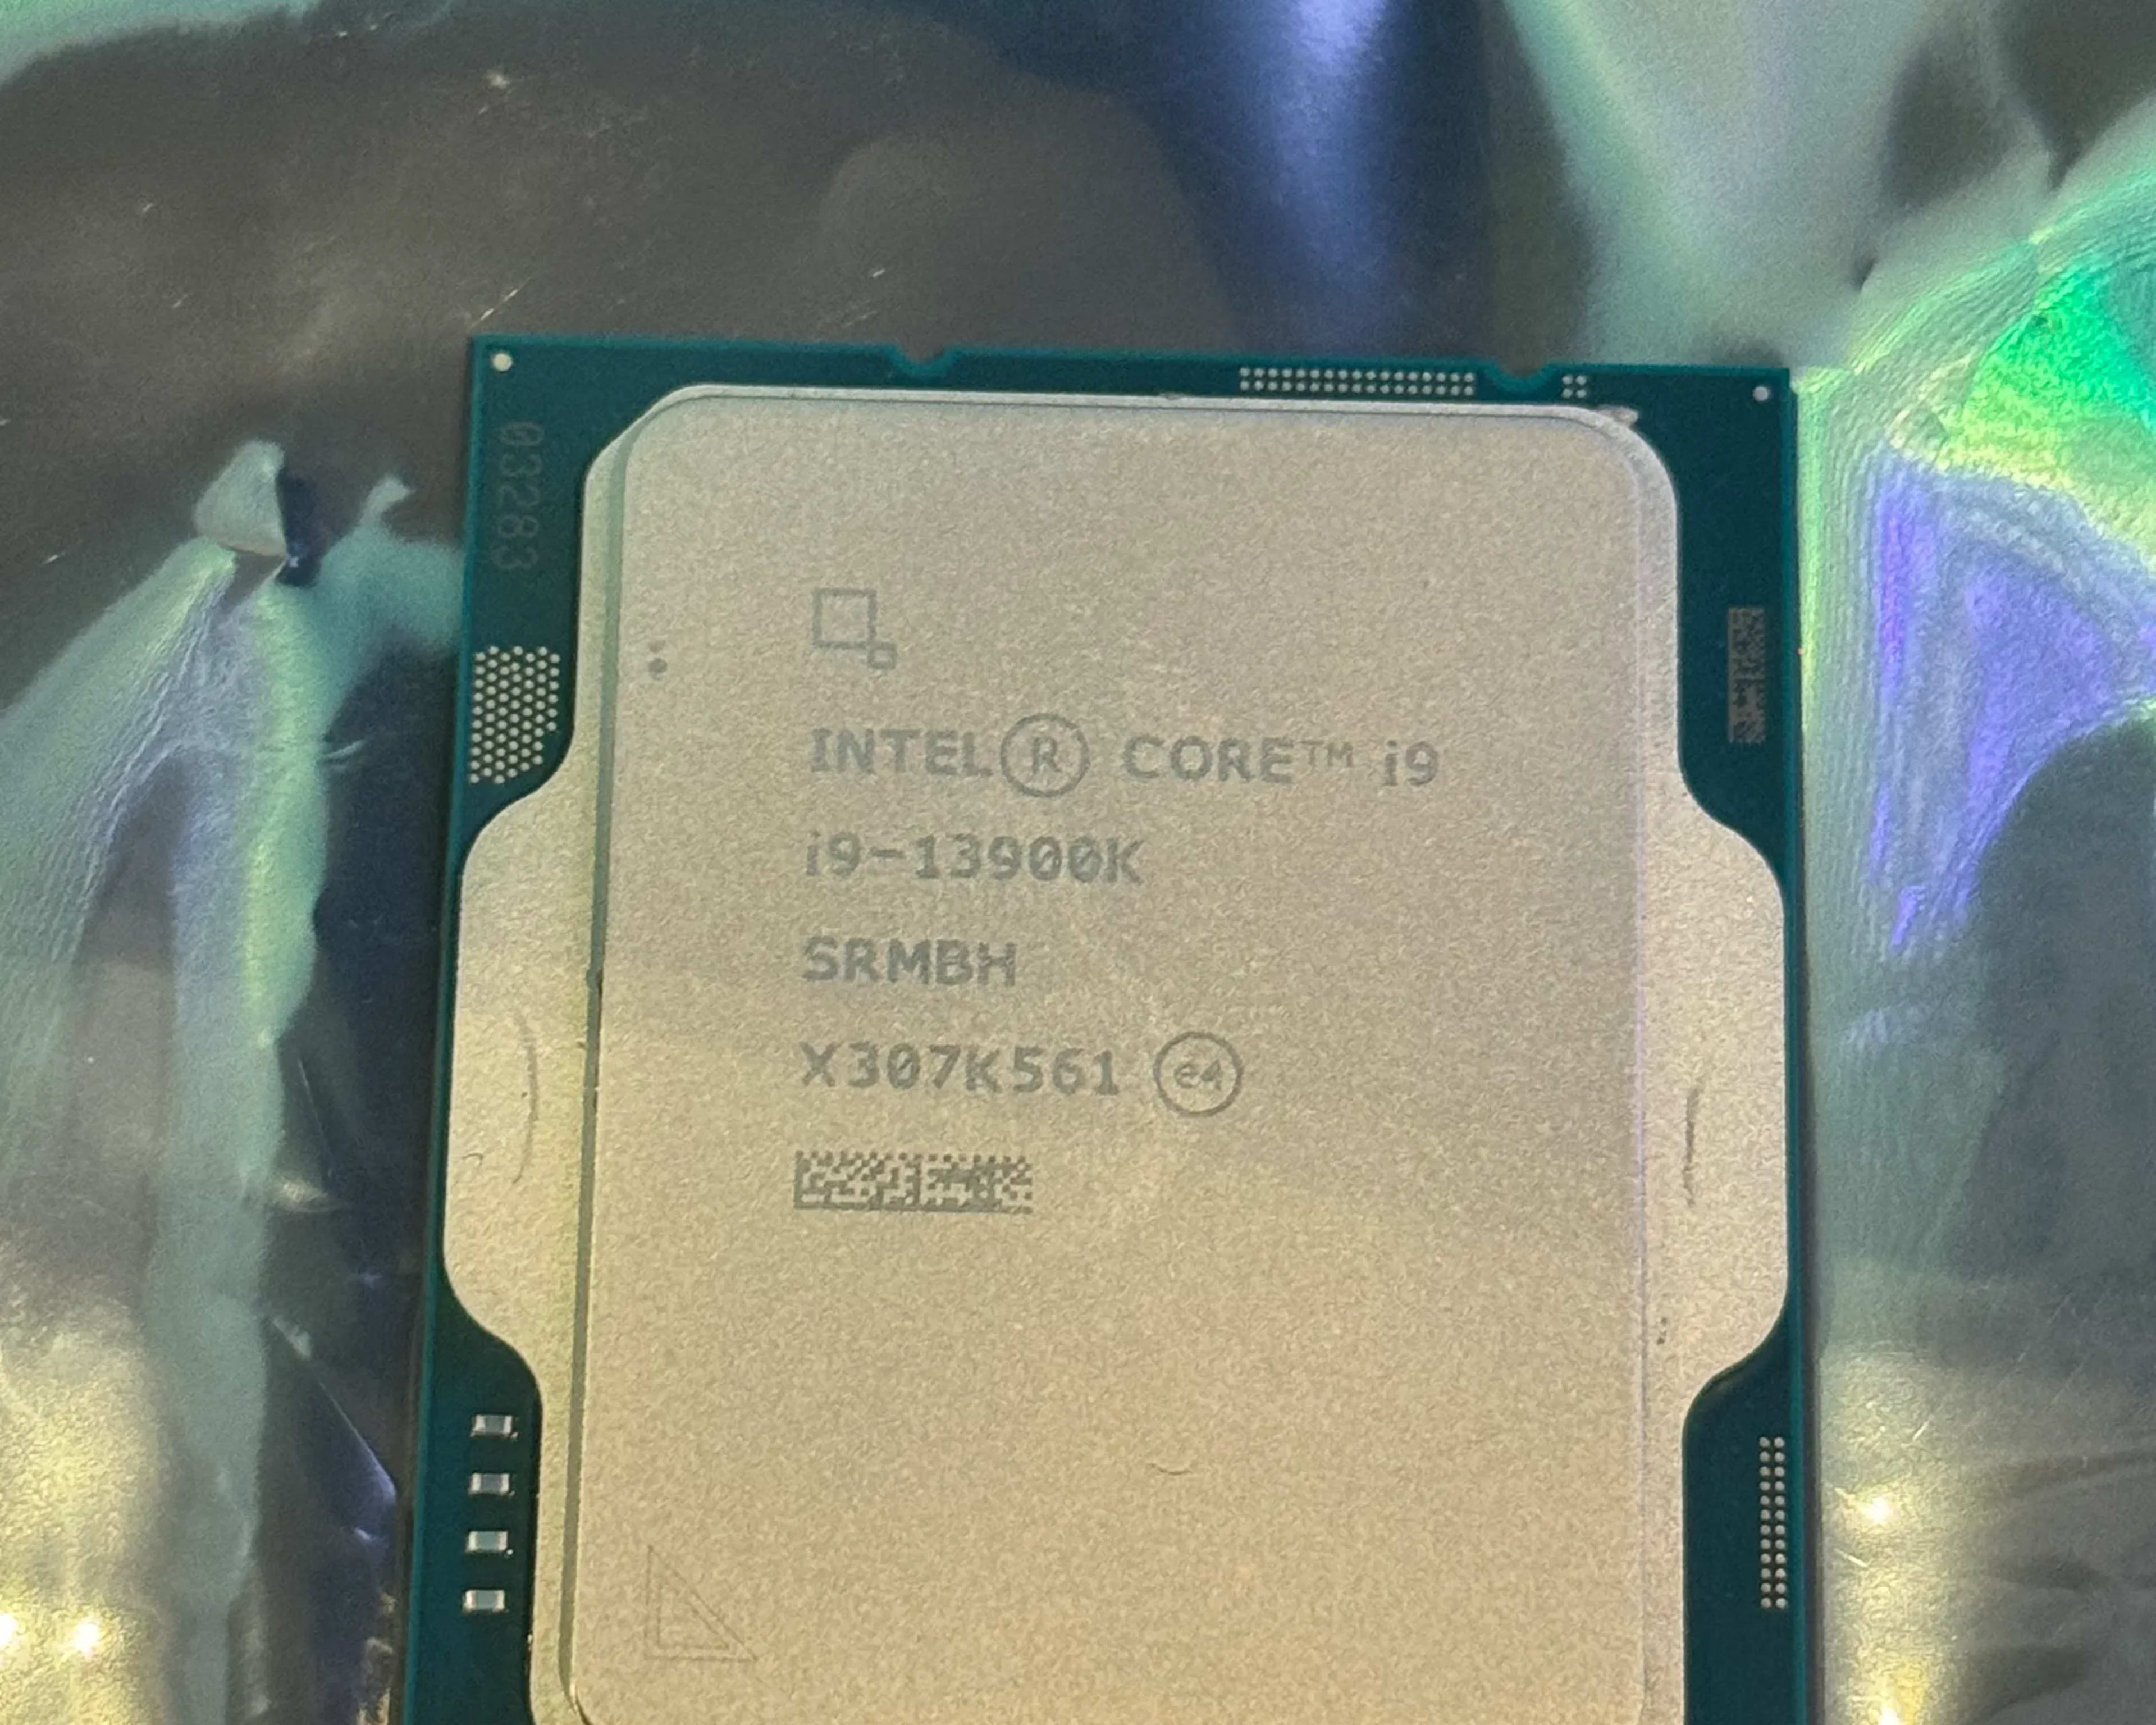 Intel Core i9-13900K Gaming Desktop Processor 24 cores (8 P-cores + 16 E-cores)- Unlocked